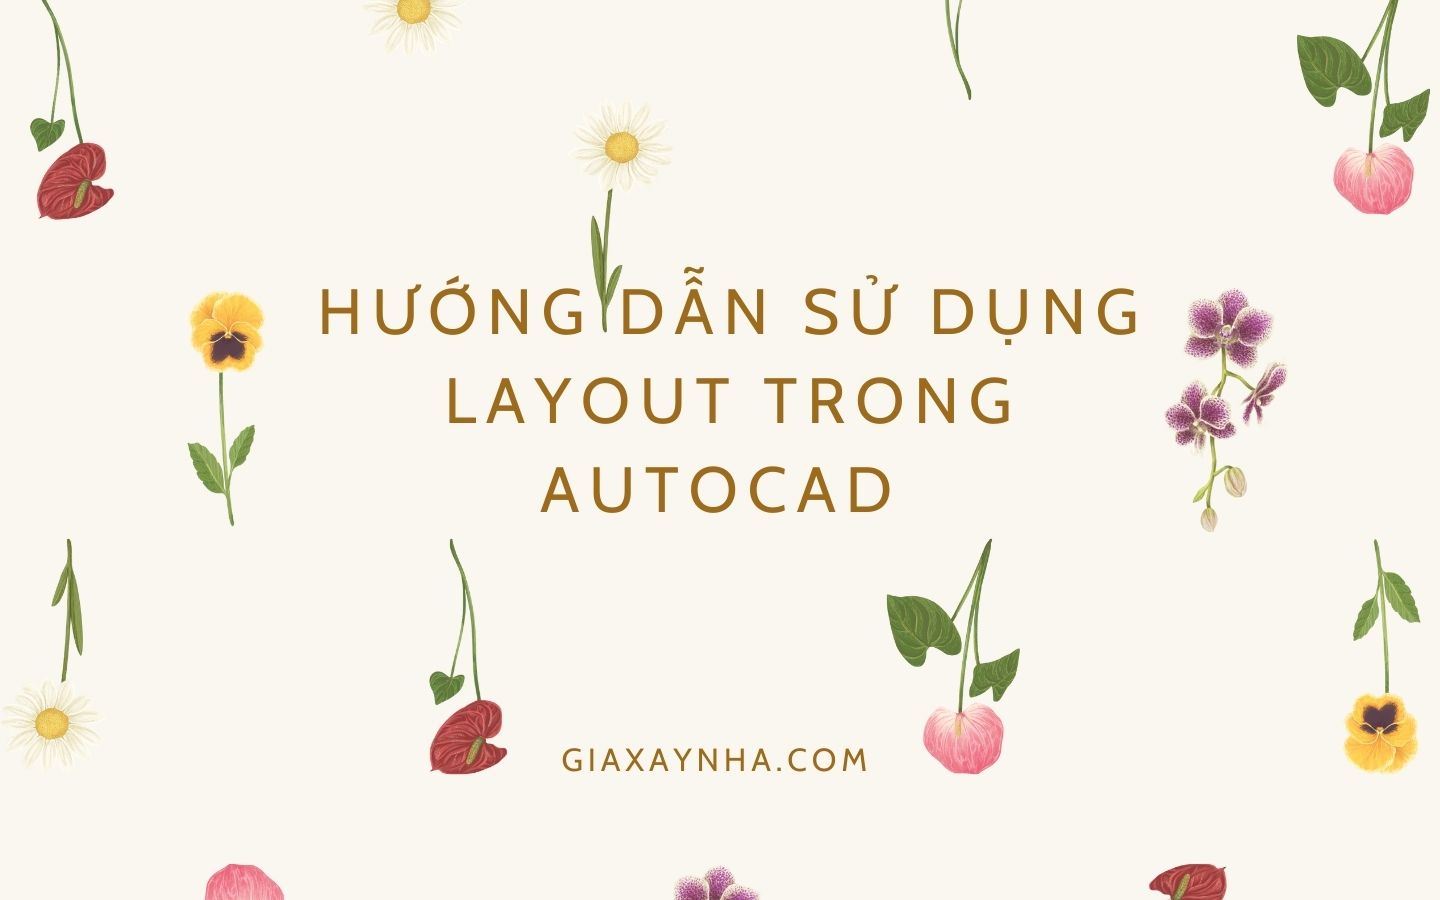 Giaxaynha.com Huong dan su dung layout trong Autocad